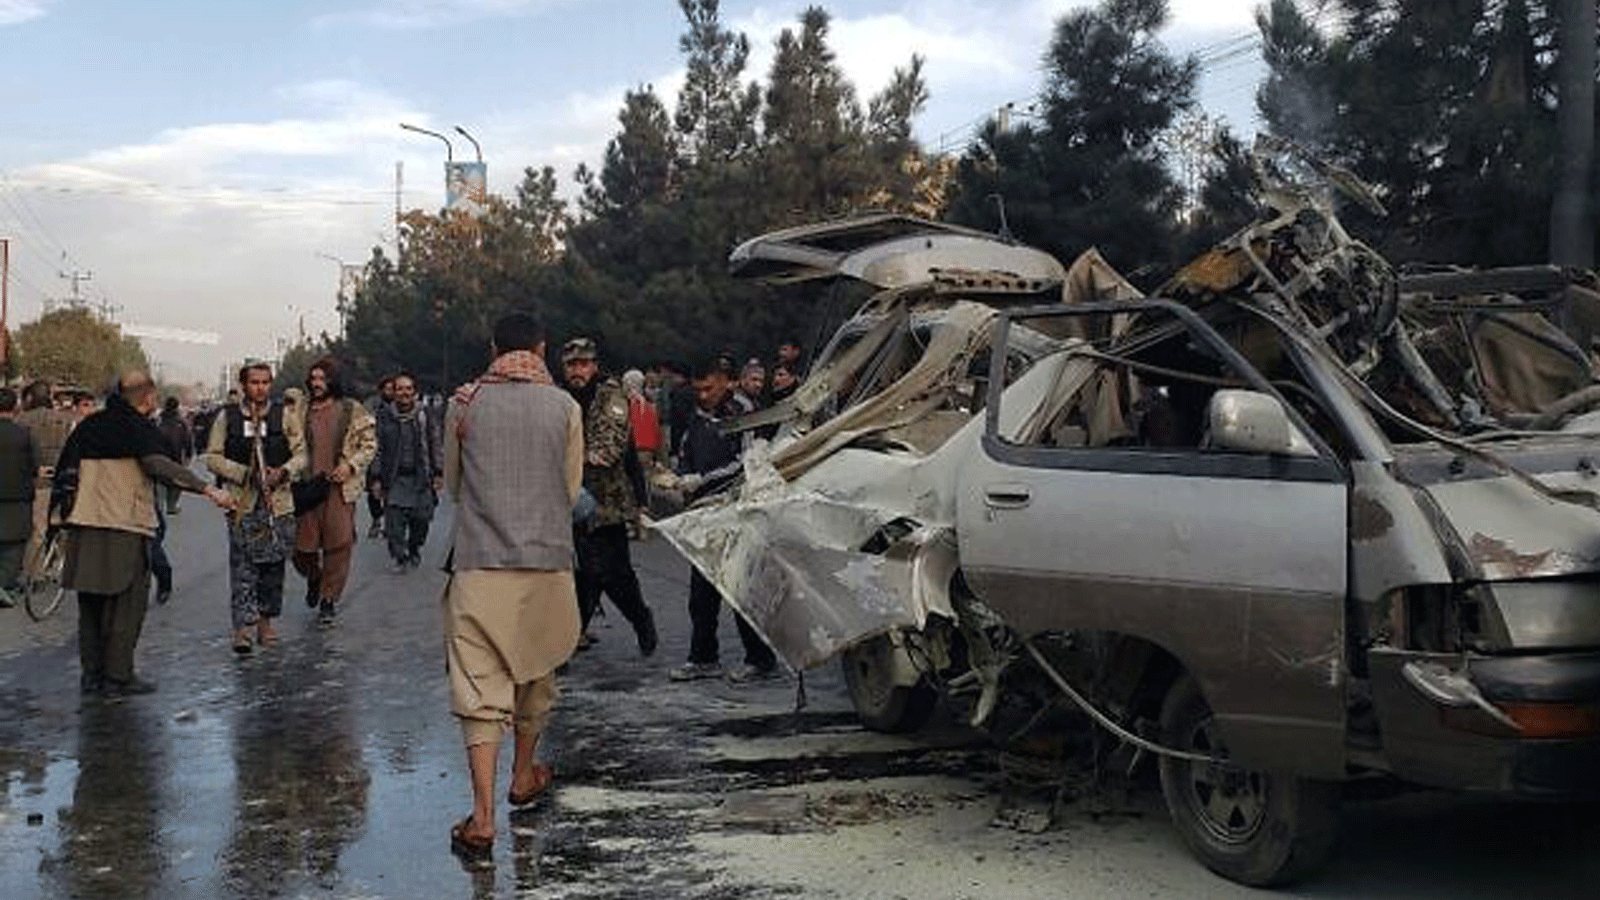 سكان يتجمعون بجوار حافلة صغيرة مدمرة بعد انفجار قنبلة أسفر عن مقتل شخصين وإصابة خمسة بجروح في كابول. في 17 تشرين الثاني/ نوفمبر 2021